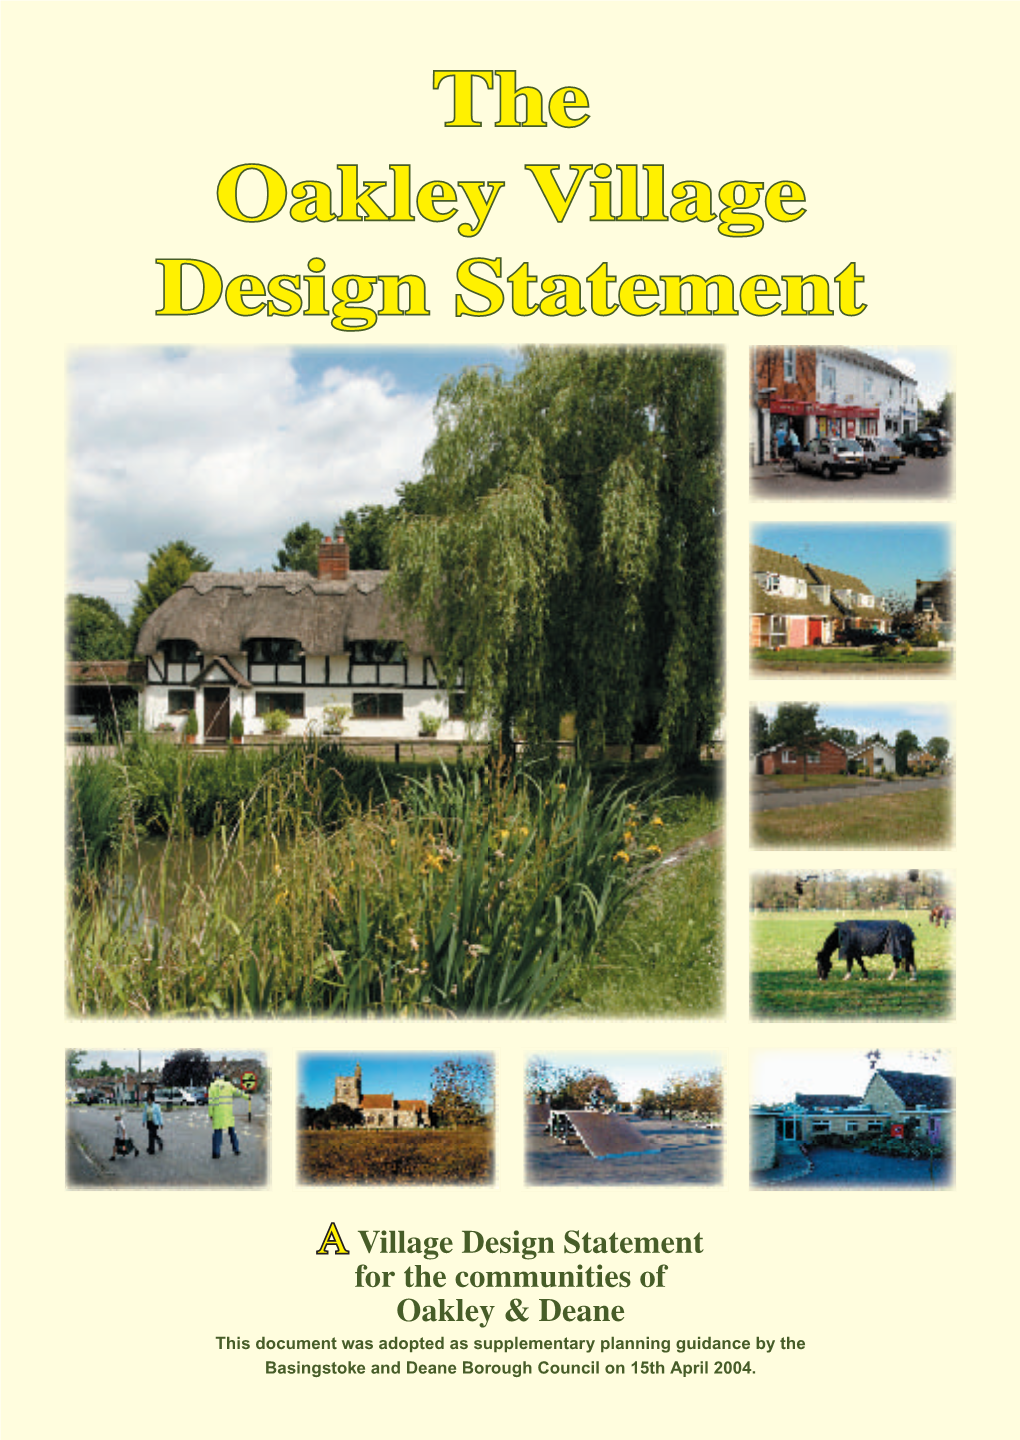 The Oakley Village Design Statement